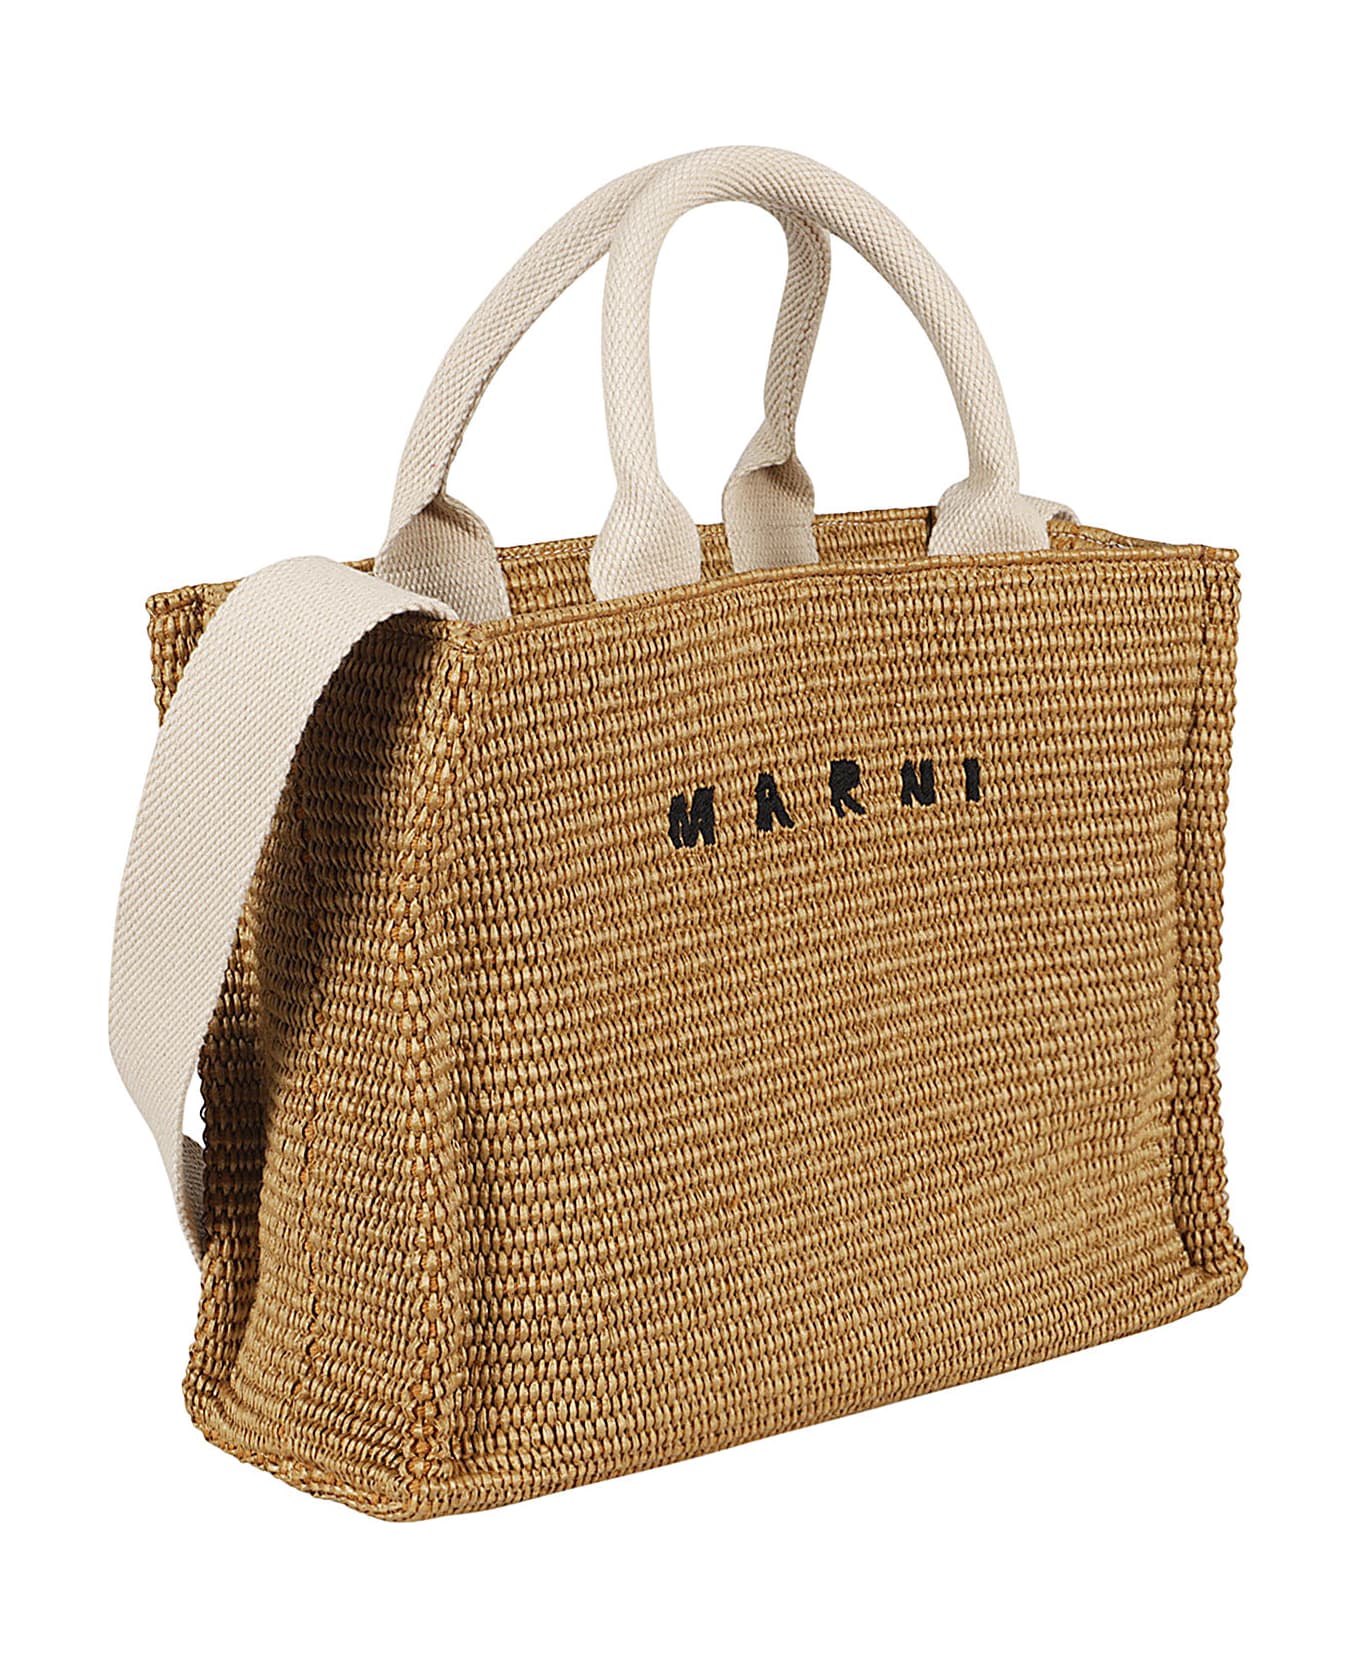 Marni Small Basket - Corda